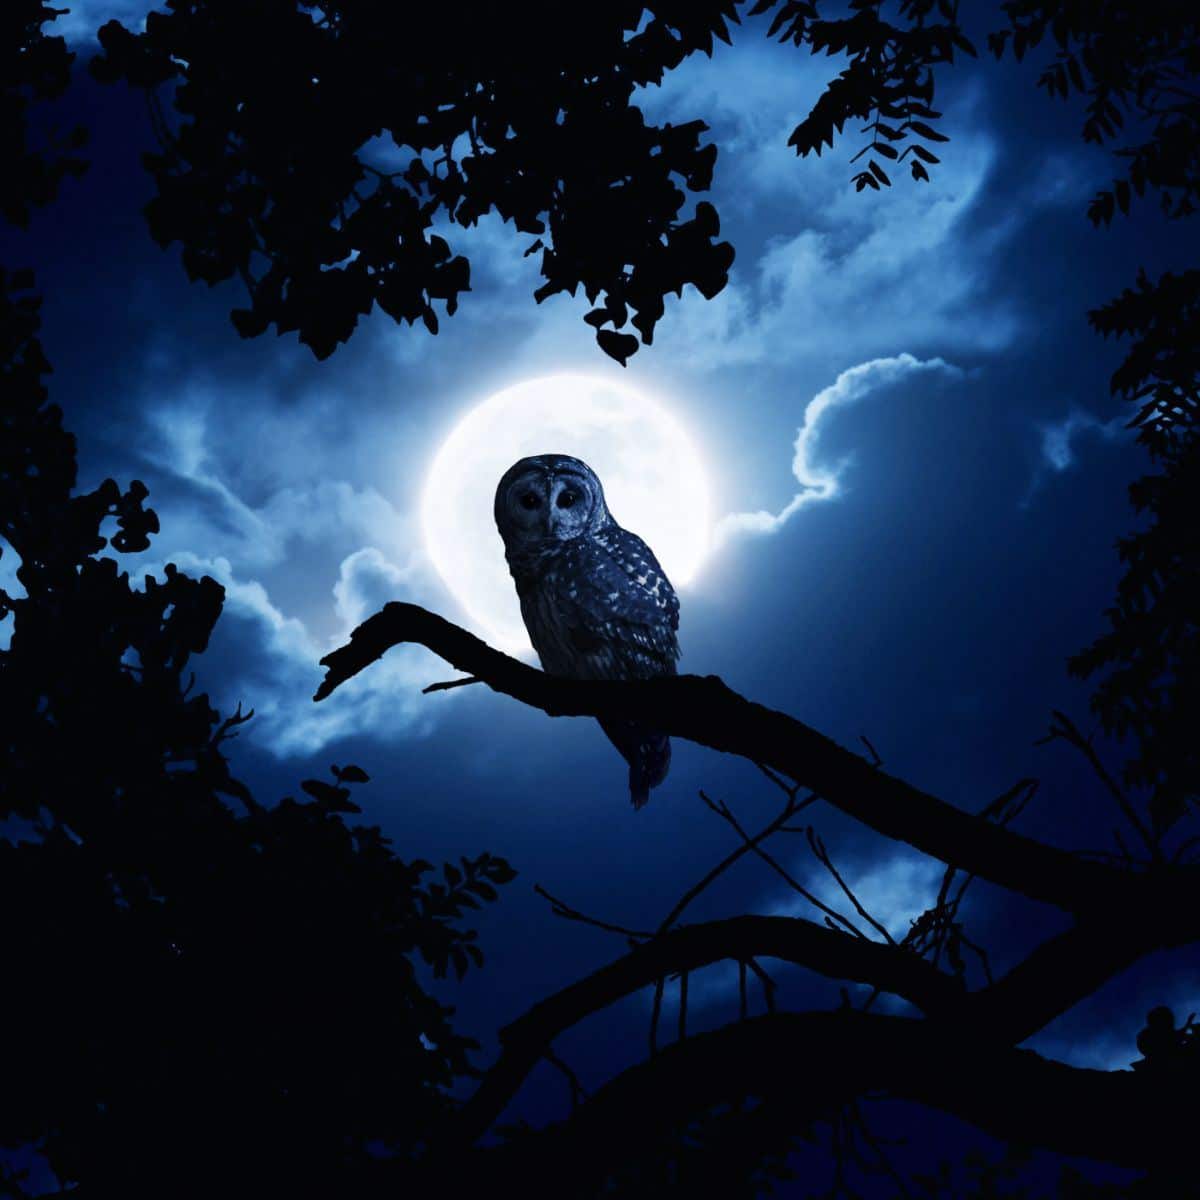 Seeing an Owl at Night spiritual meaning